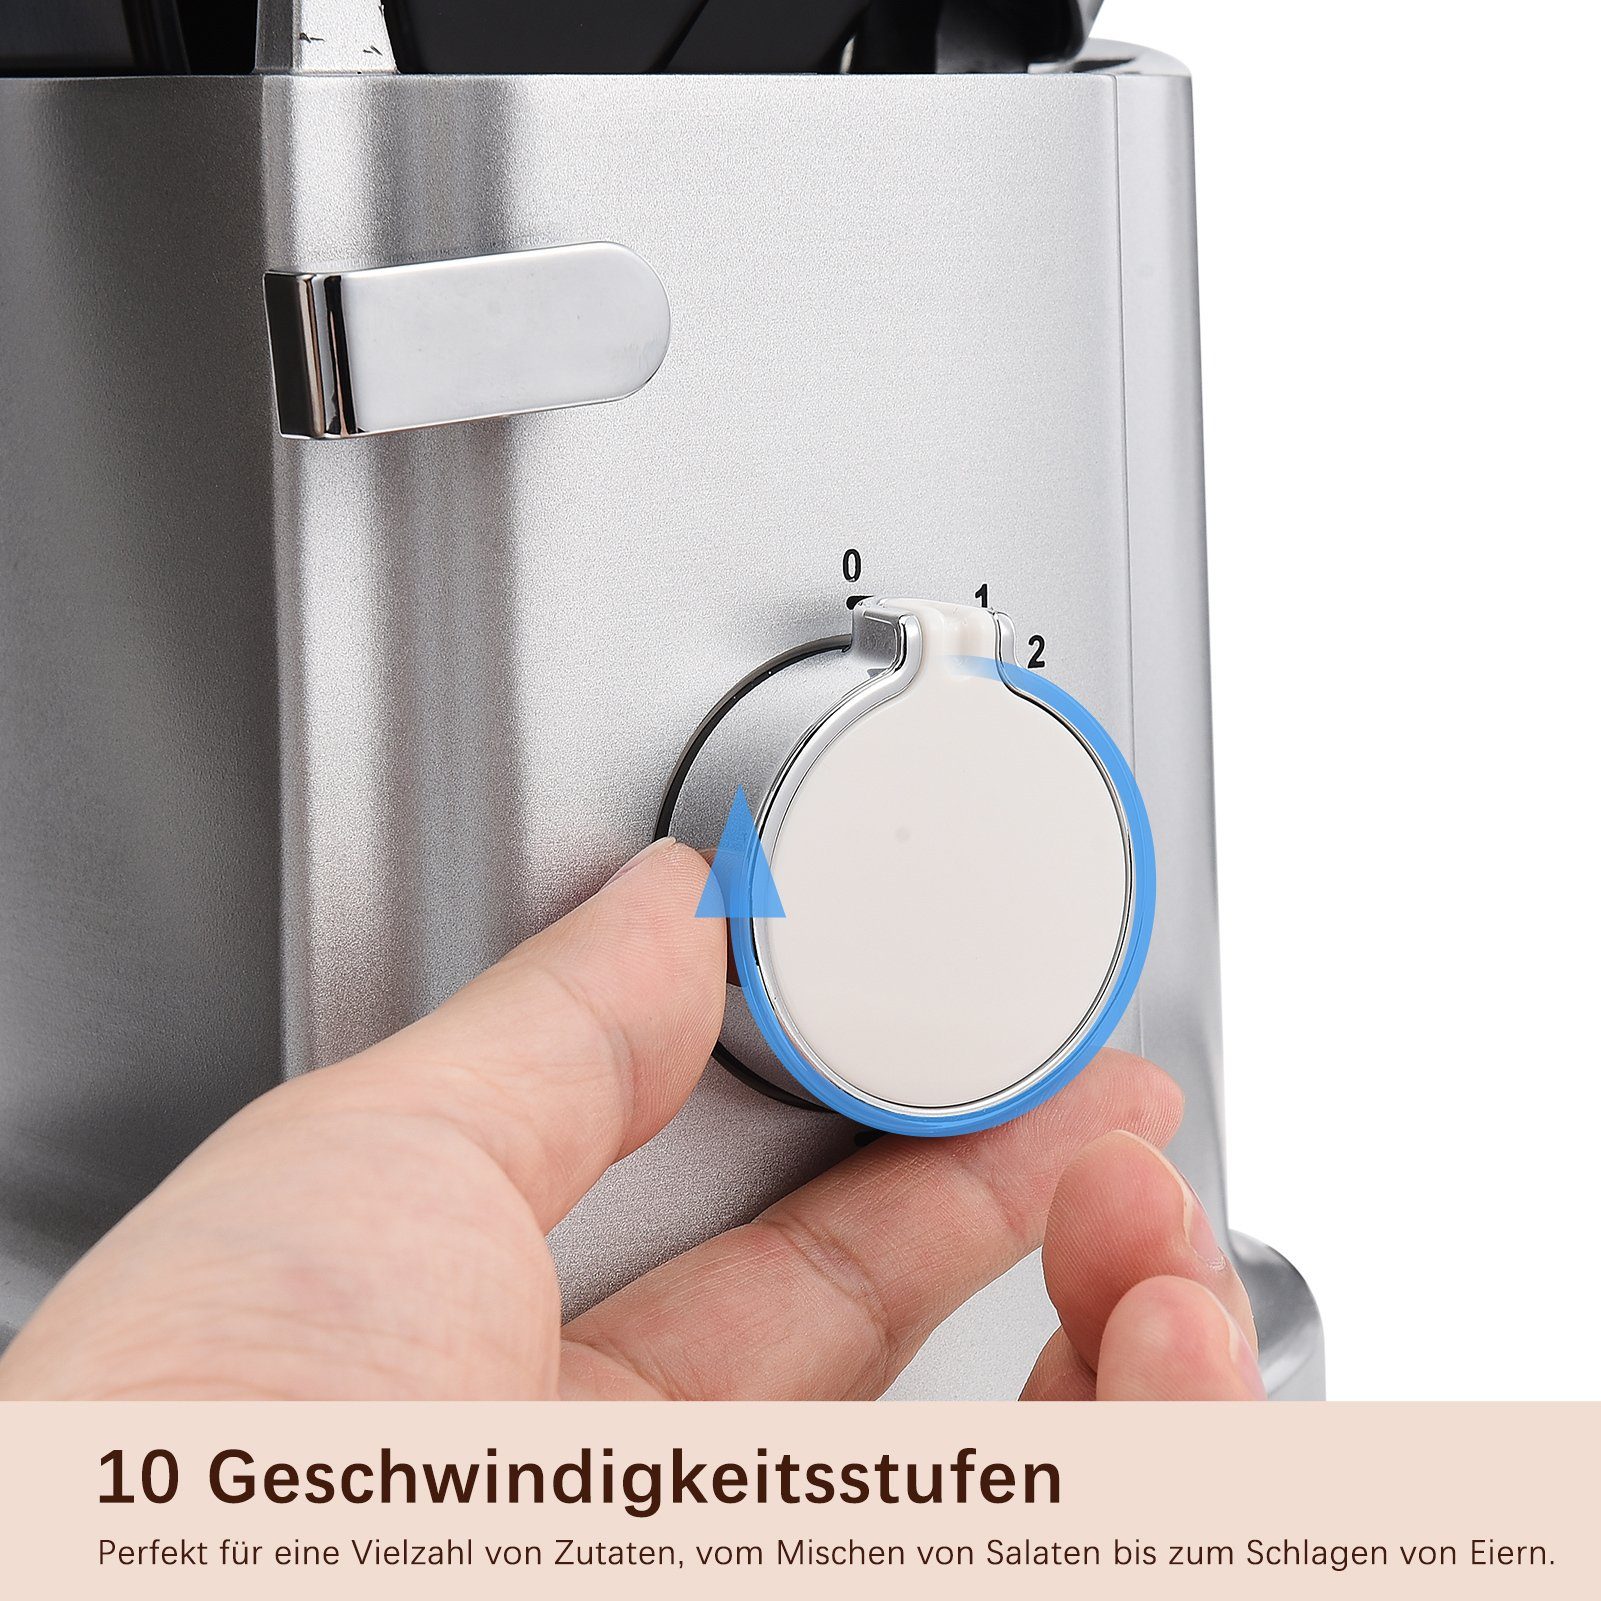 FUROKOY Küchenmaschine mit Kochfunktion Multifunktional Küchenmaschine Kleine Maschine Haushaltsgeräte Silber Mixer